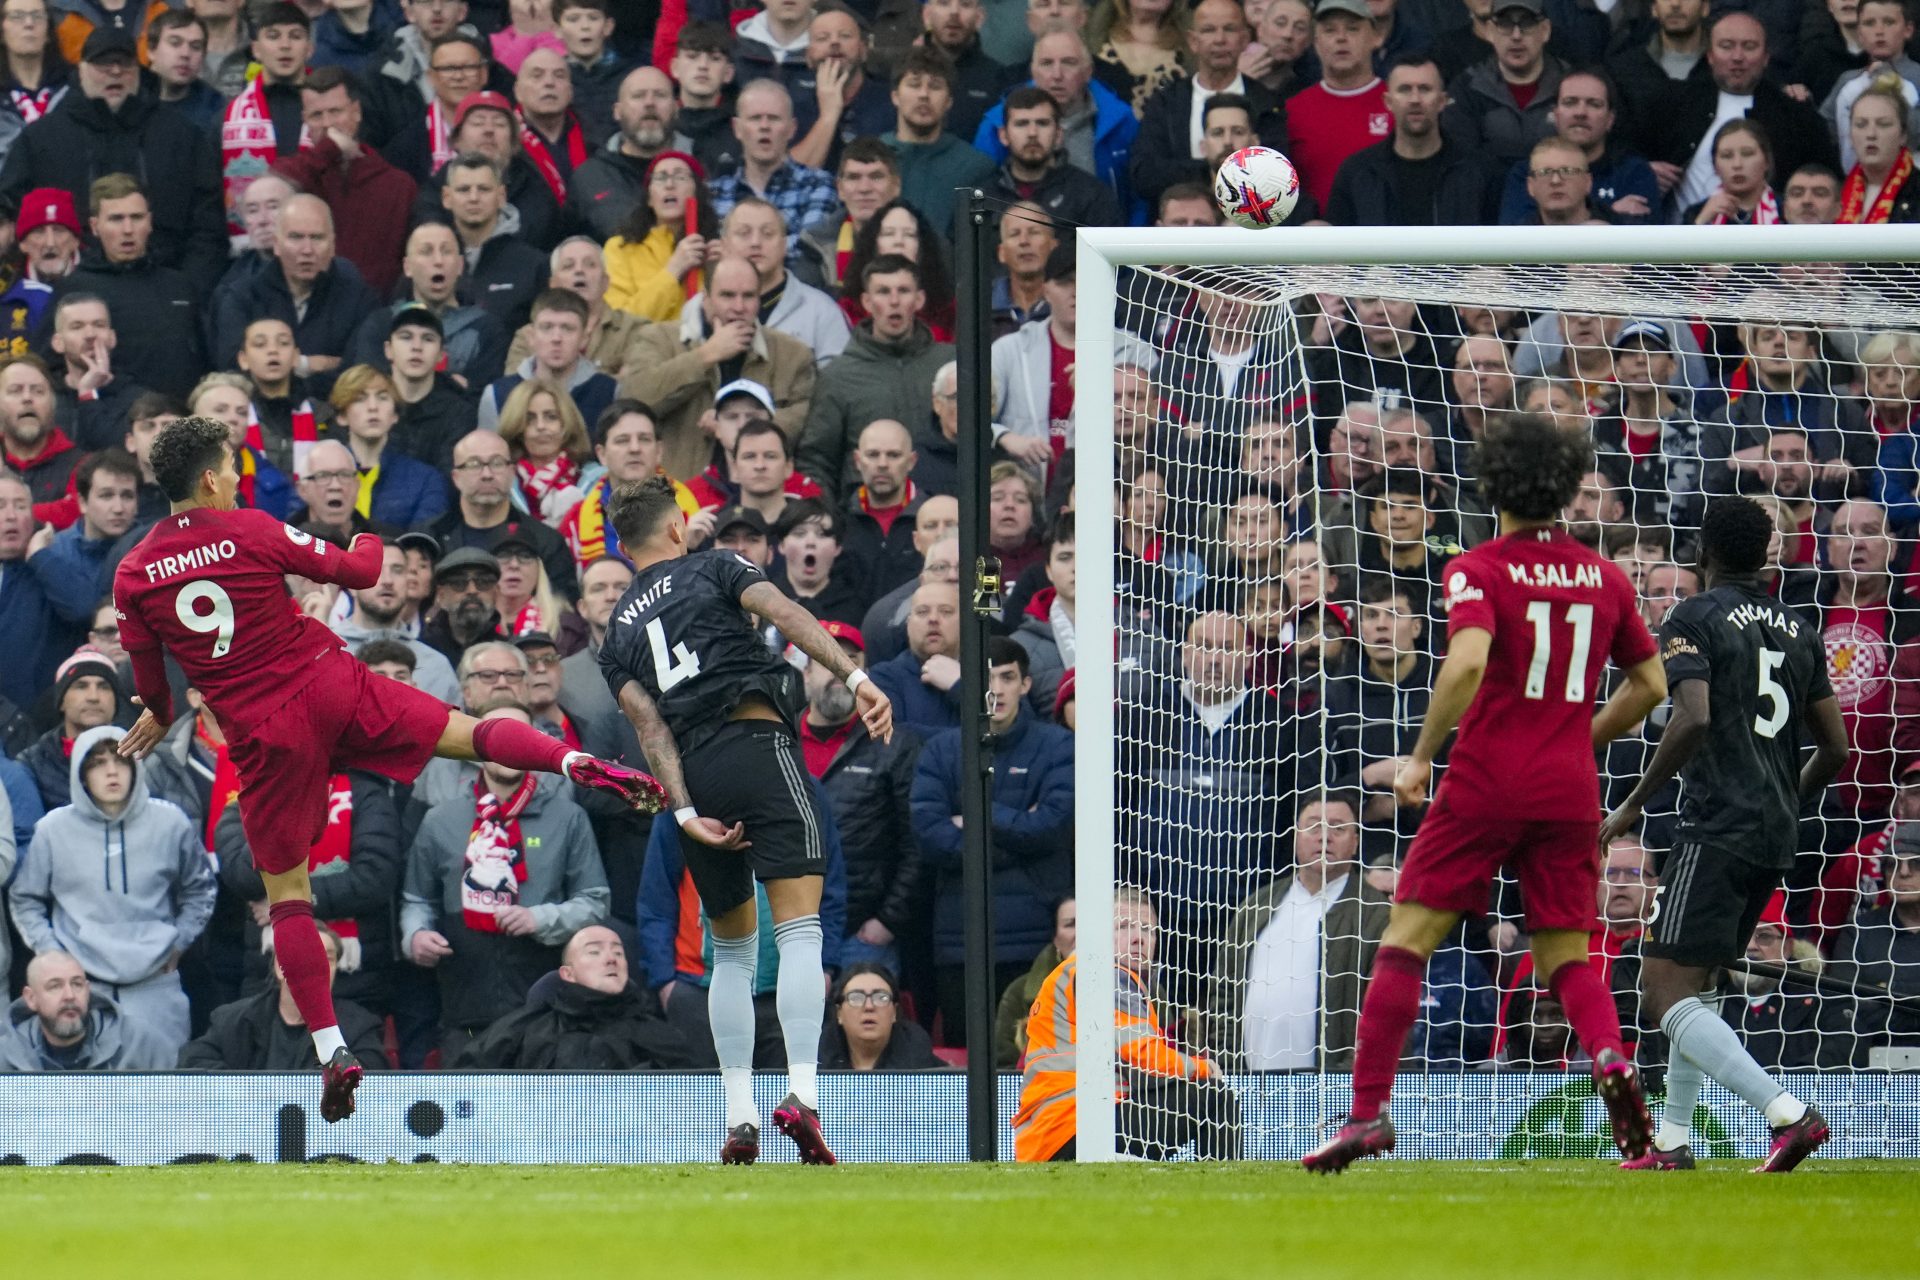 O brasileiro Roberto Firmino do Liverpool, cabeceia para marcar o gol de empate na partida contra o Arsenal válida pelo Campeonato Inglês, no Estádio Anfield, em Liverpool - Foto: Jon Super/Associated Press/Estadão Conteúdo